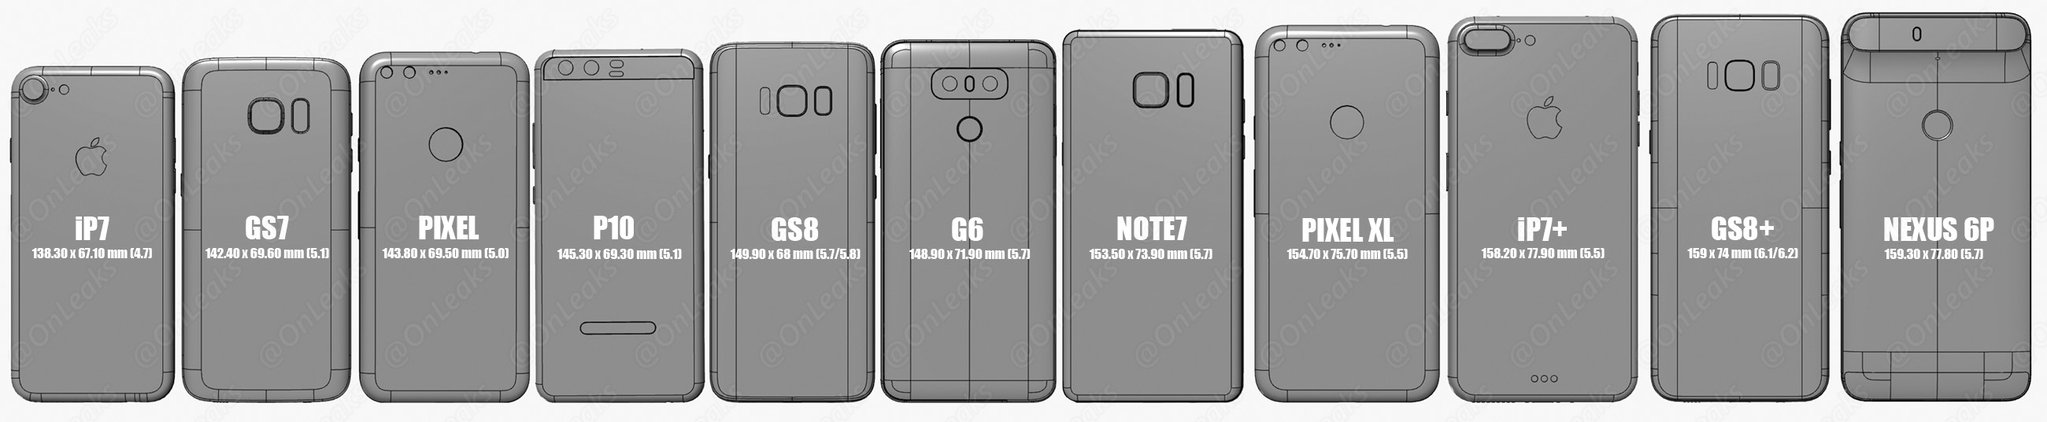 Galaxy S8 vs iPhone 7 Size Comparison